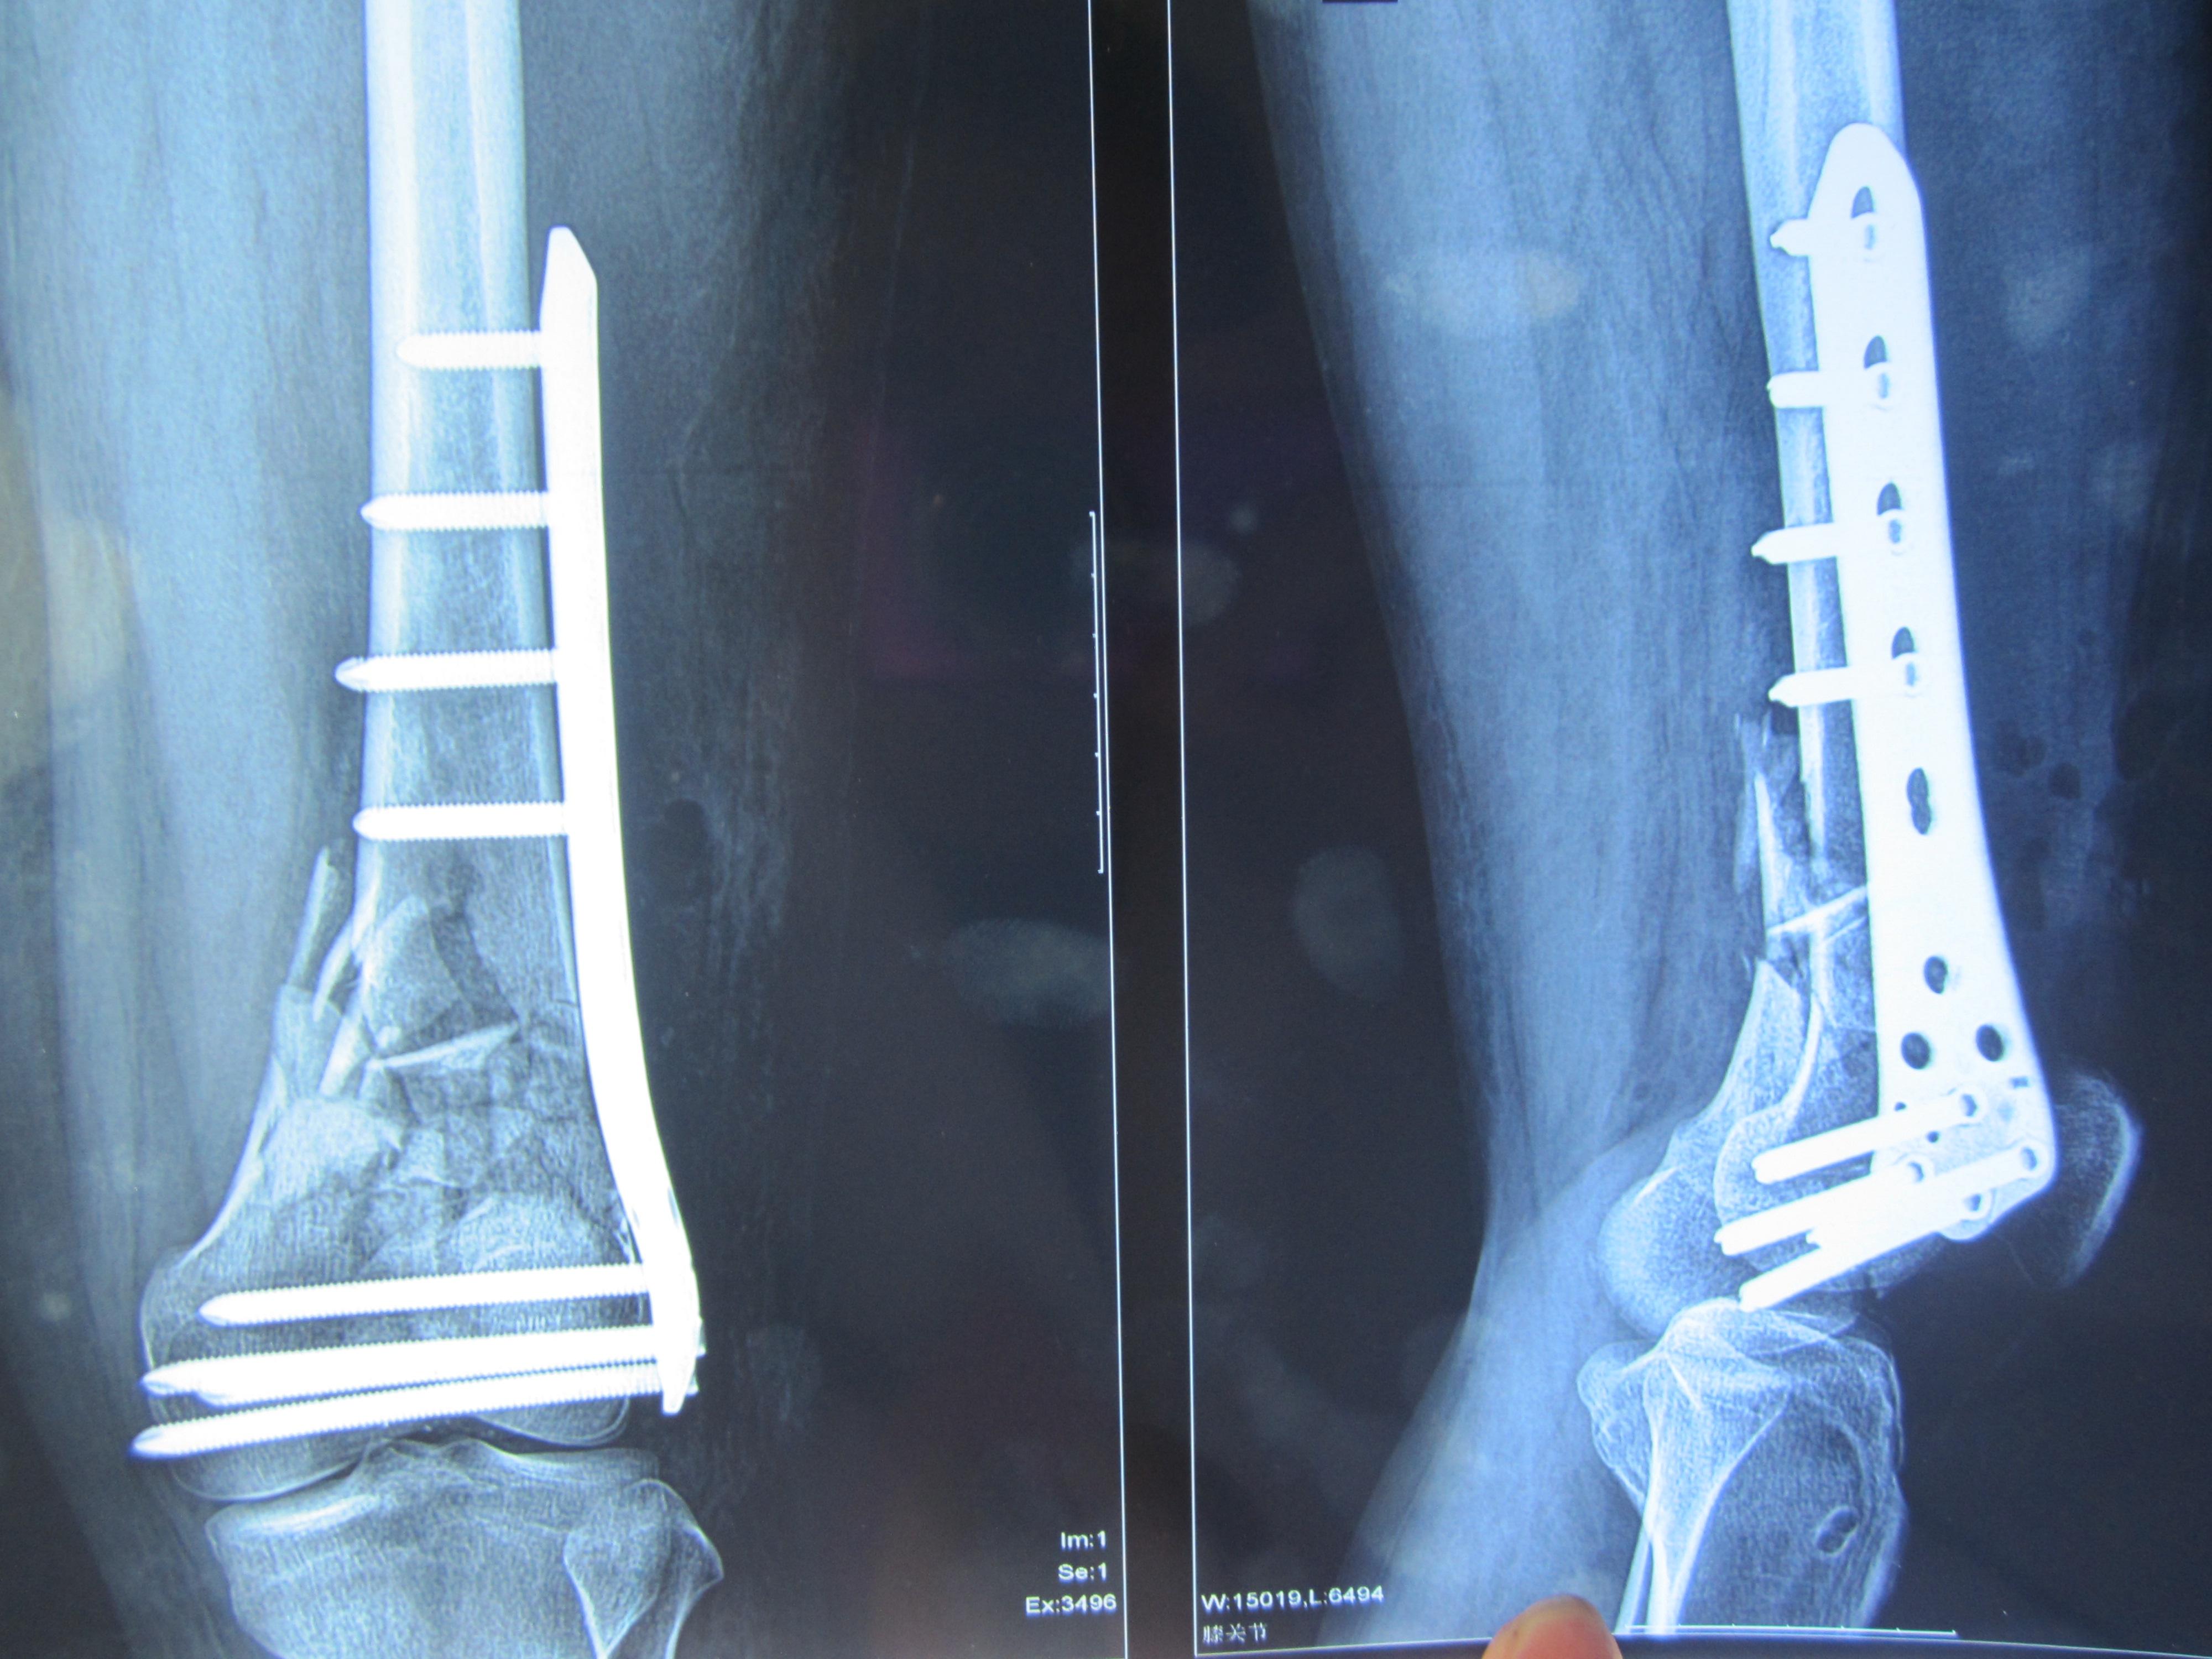 股骨远端骨折术后锁定钢板断裂